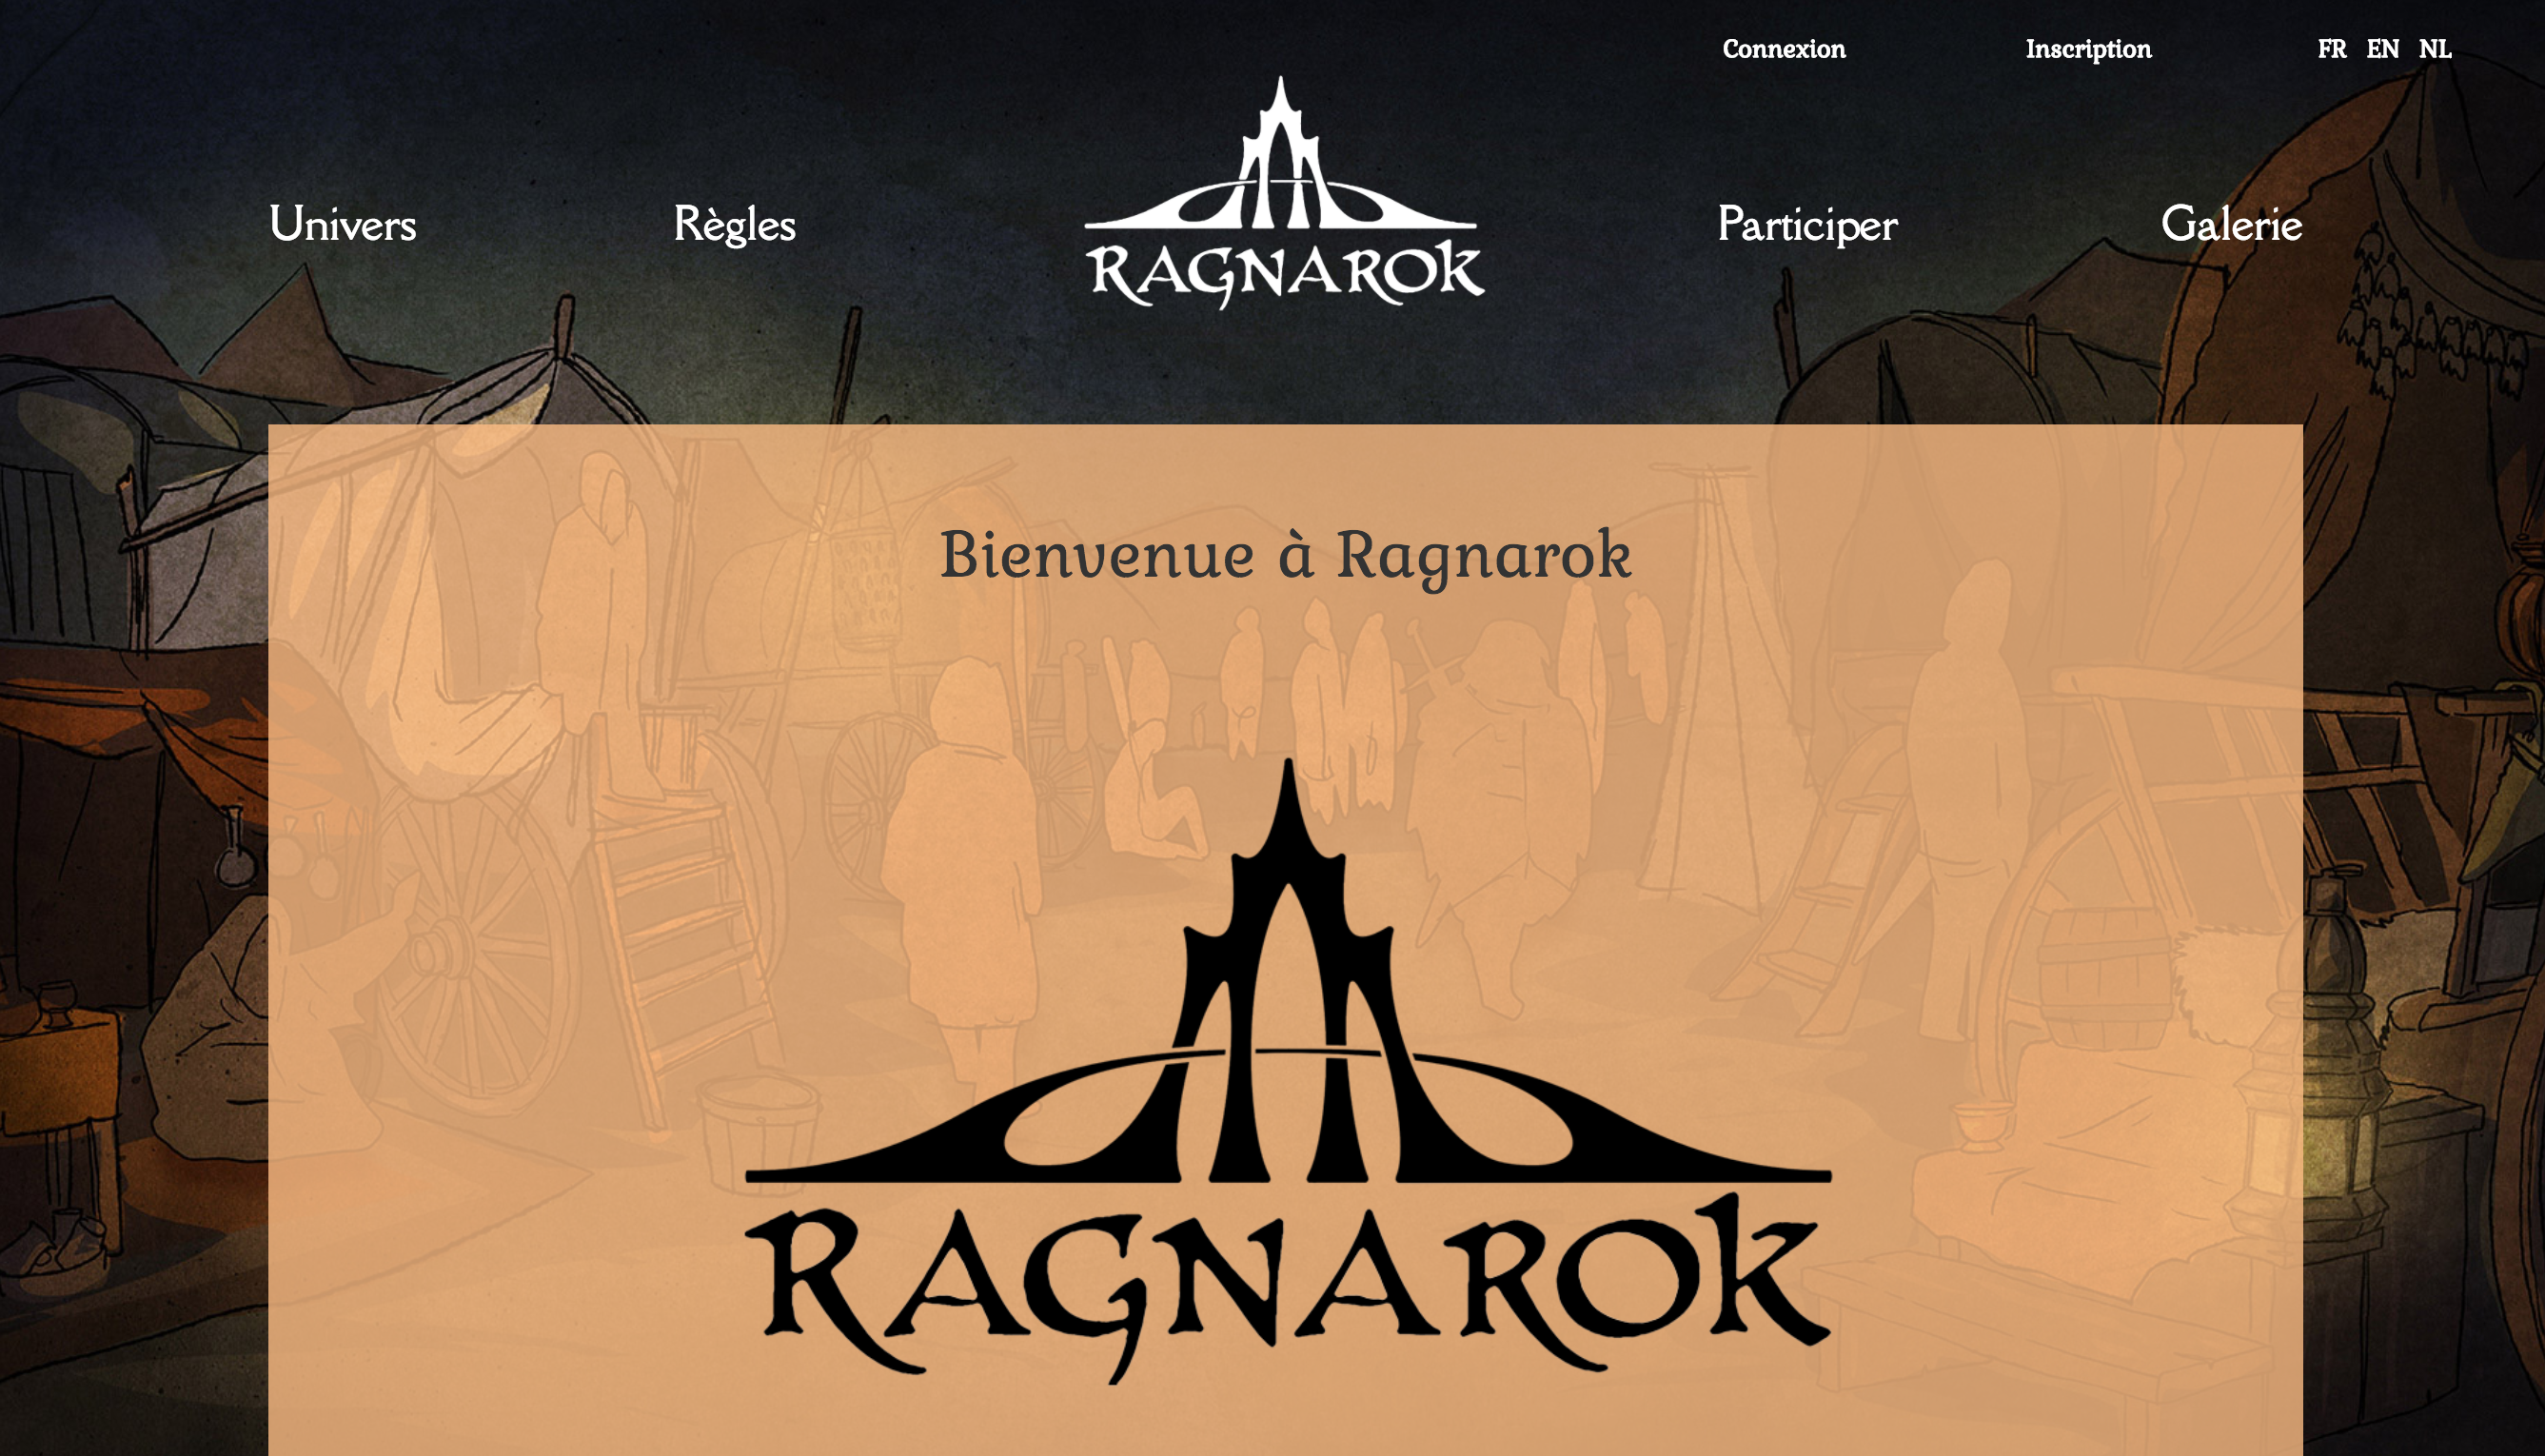 Ragnarok